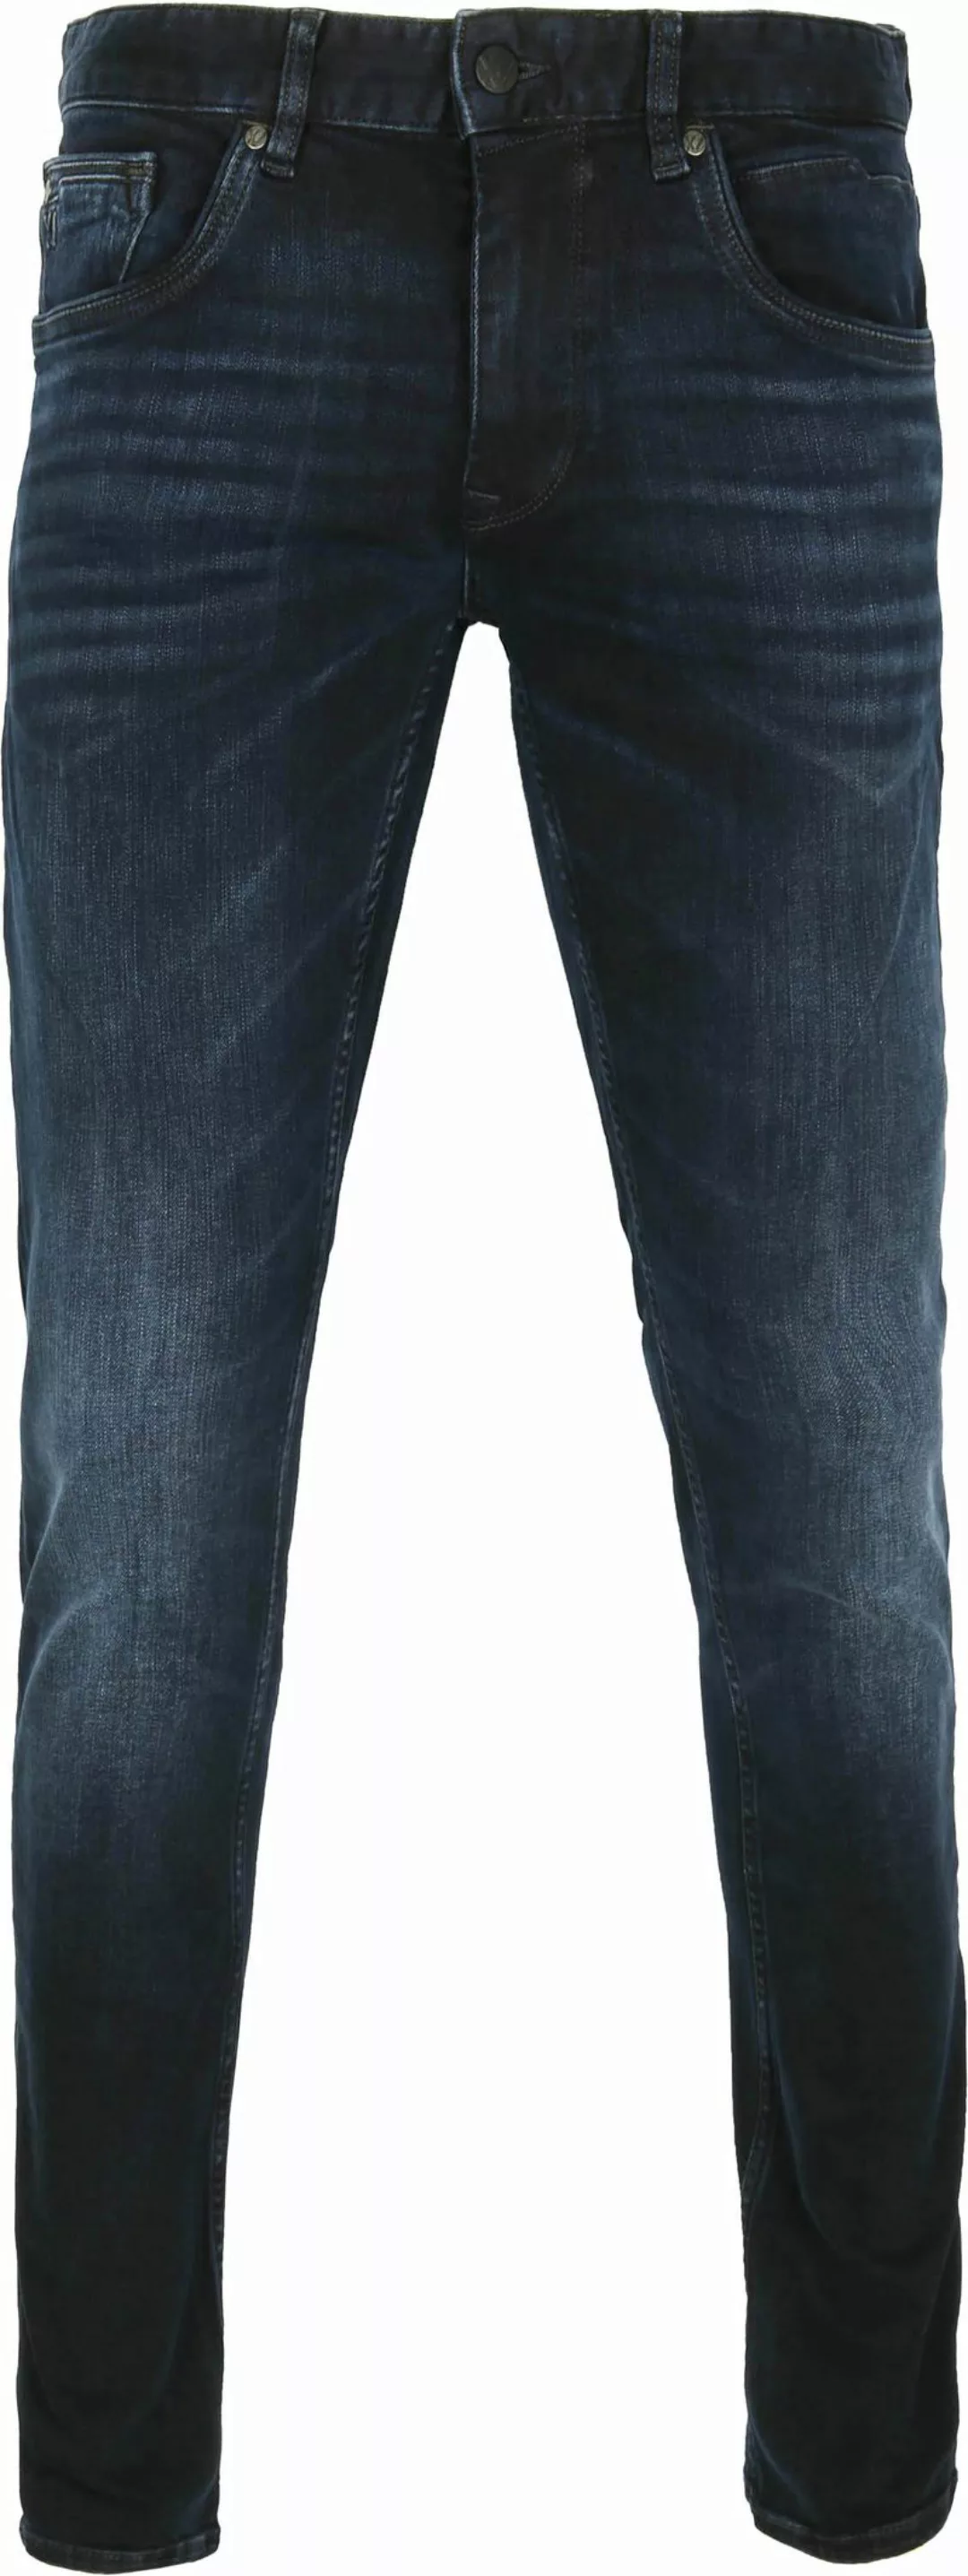 PME Legend XV Jeans Blue Black PTR150 - Größe W 40 - L 34 günstig online kaufen